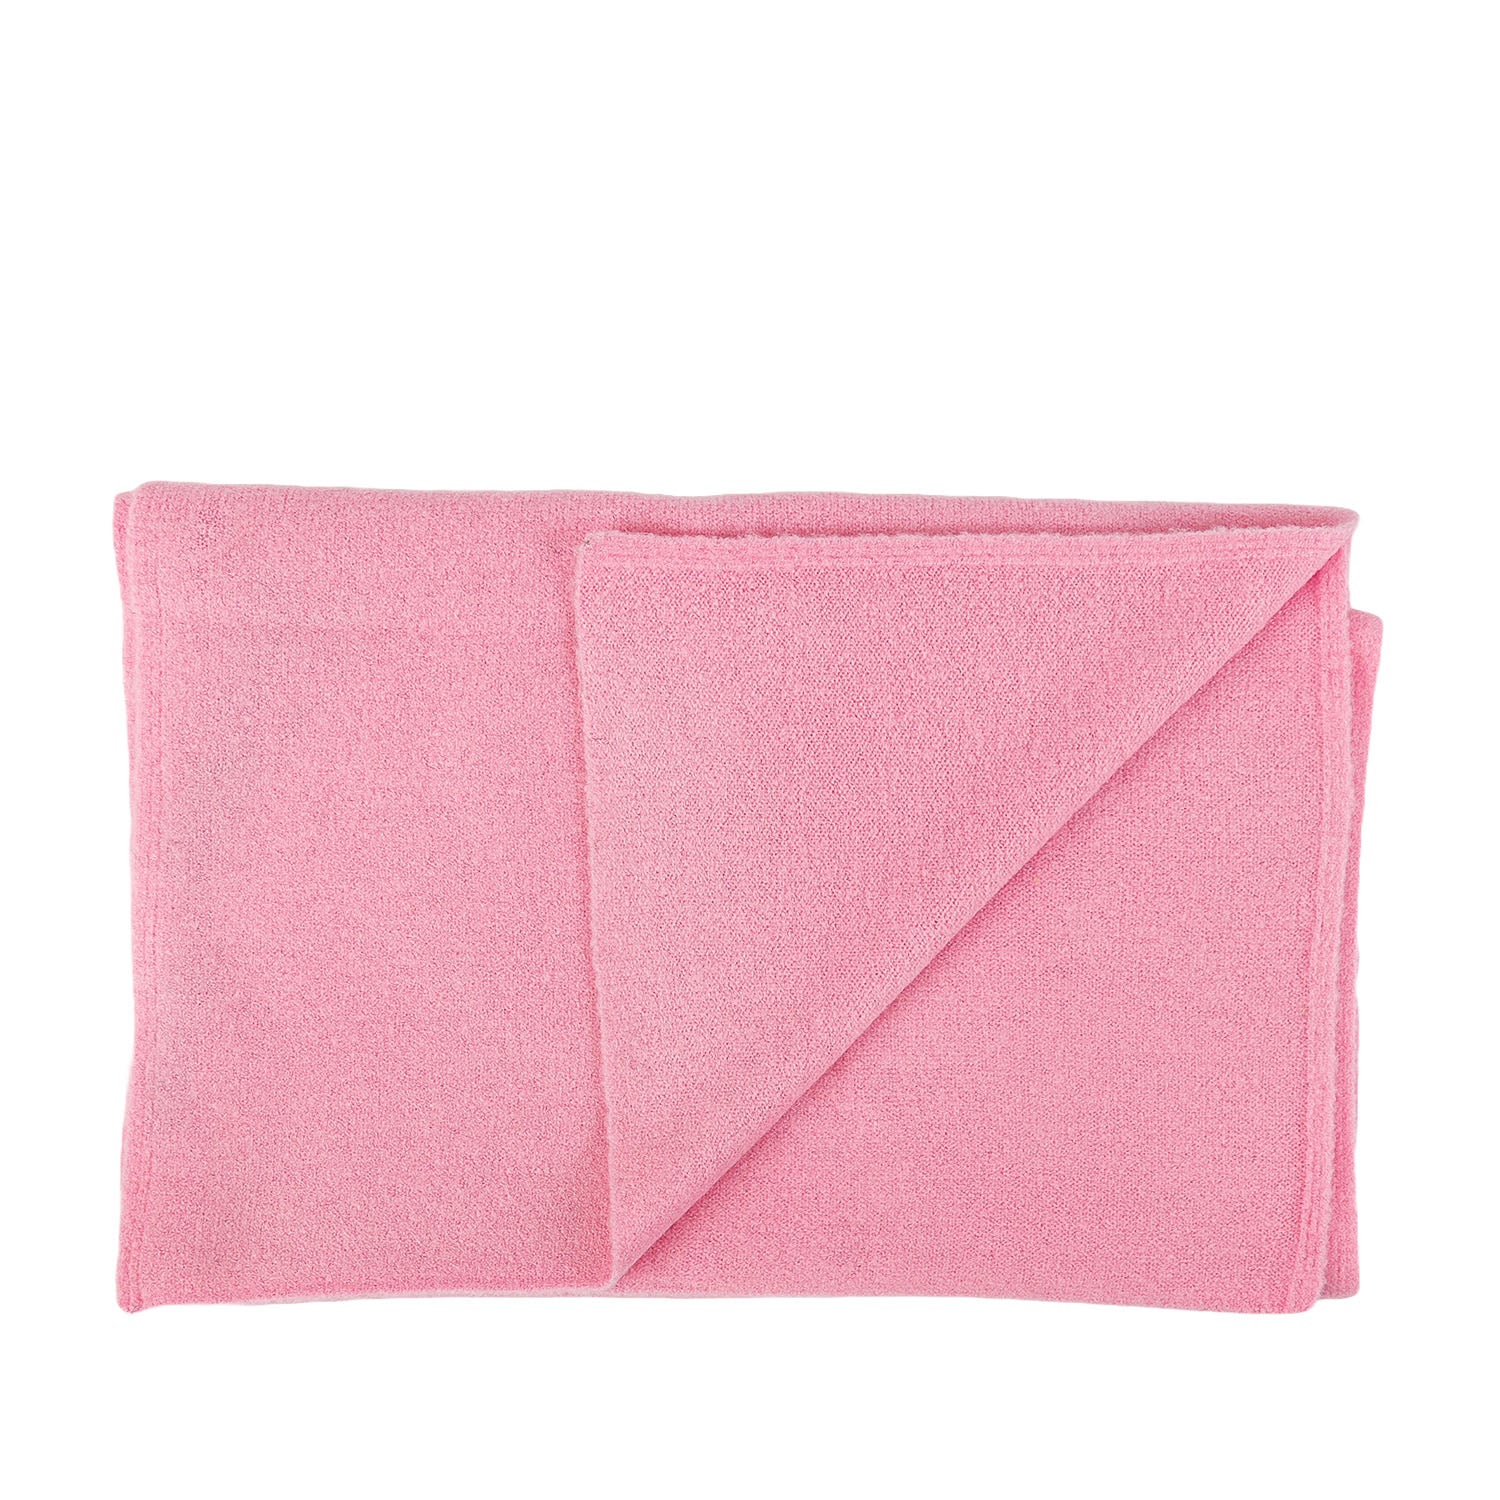 Lyla & Luxe Women's Marl Scarf in Pink